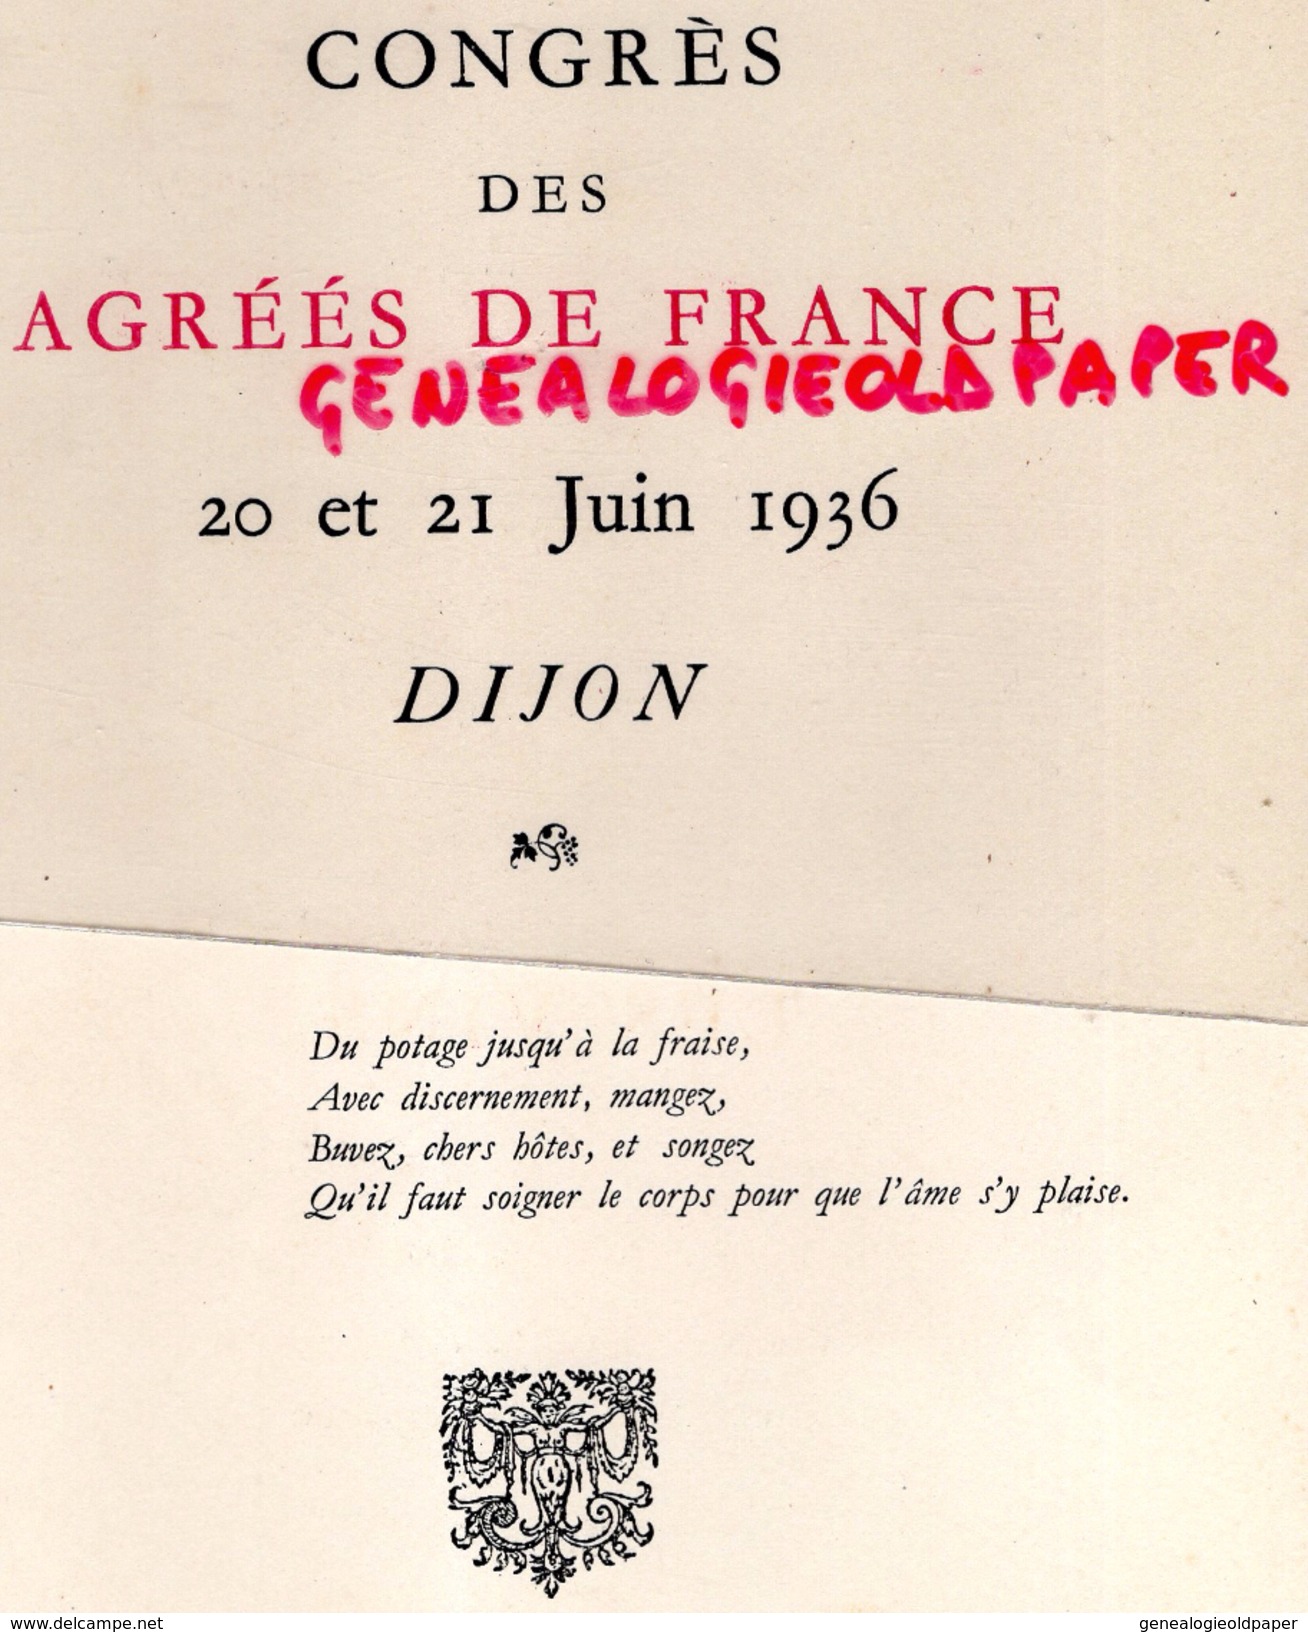 21 - DIJON - BEAU MENU CARTONNE- TOUR DE BAR FUSAIN D. RICHIER- CONGRES DES AGREES DE FRANCE-1936- RACOUCHOT TRAITEUR- - Menükarten